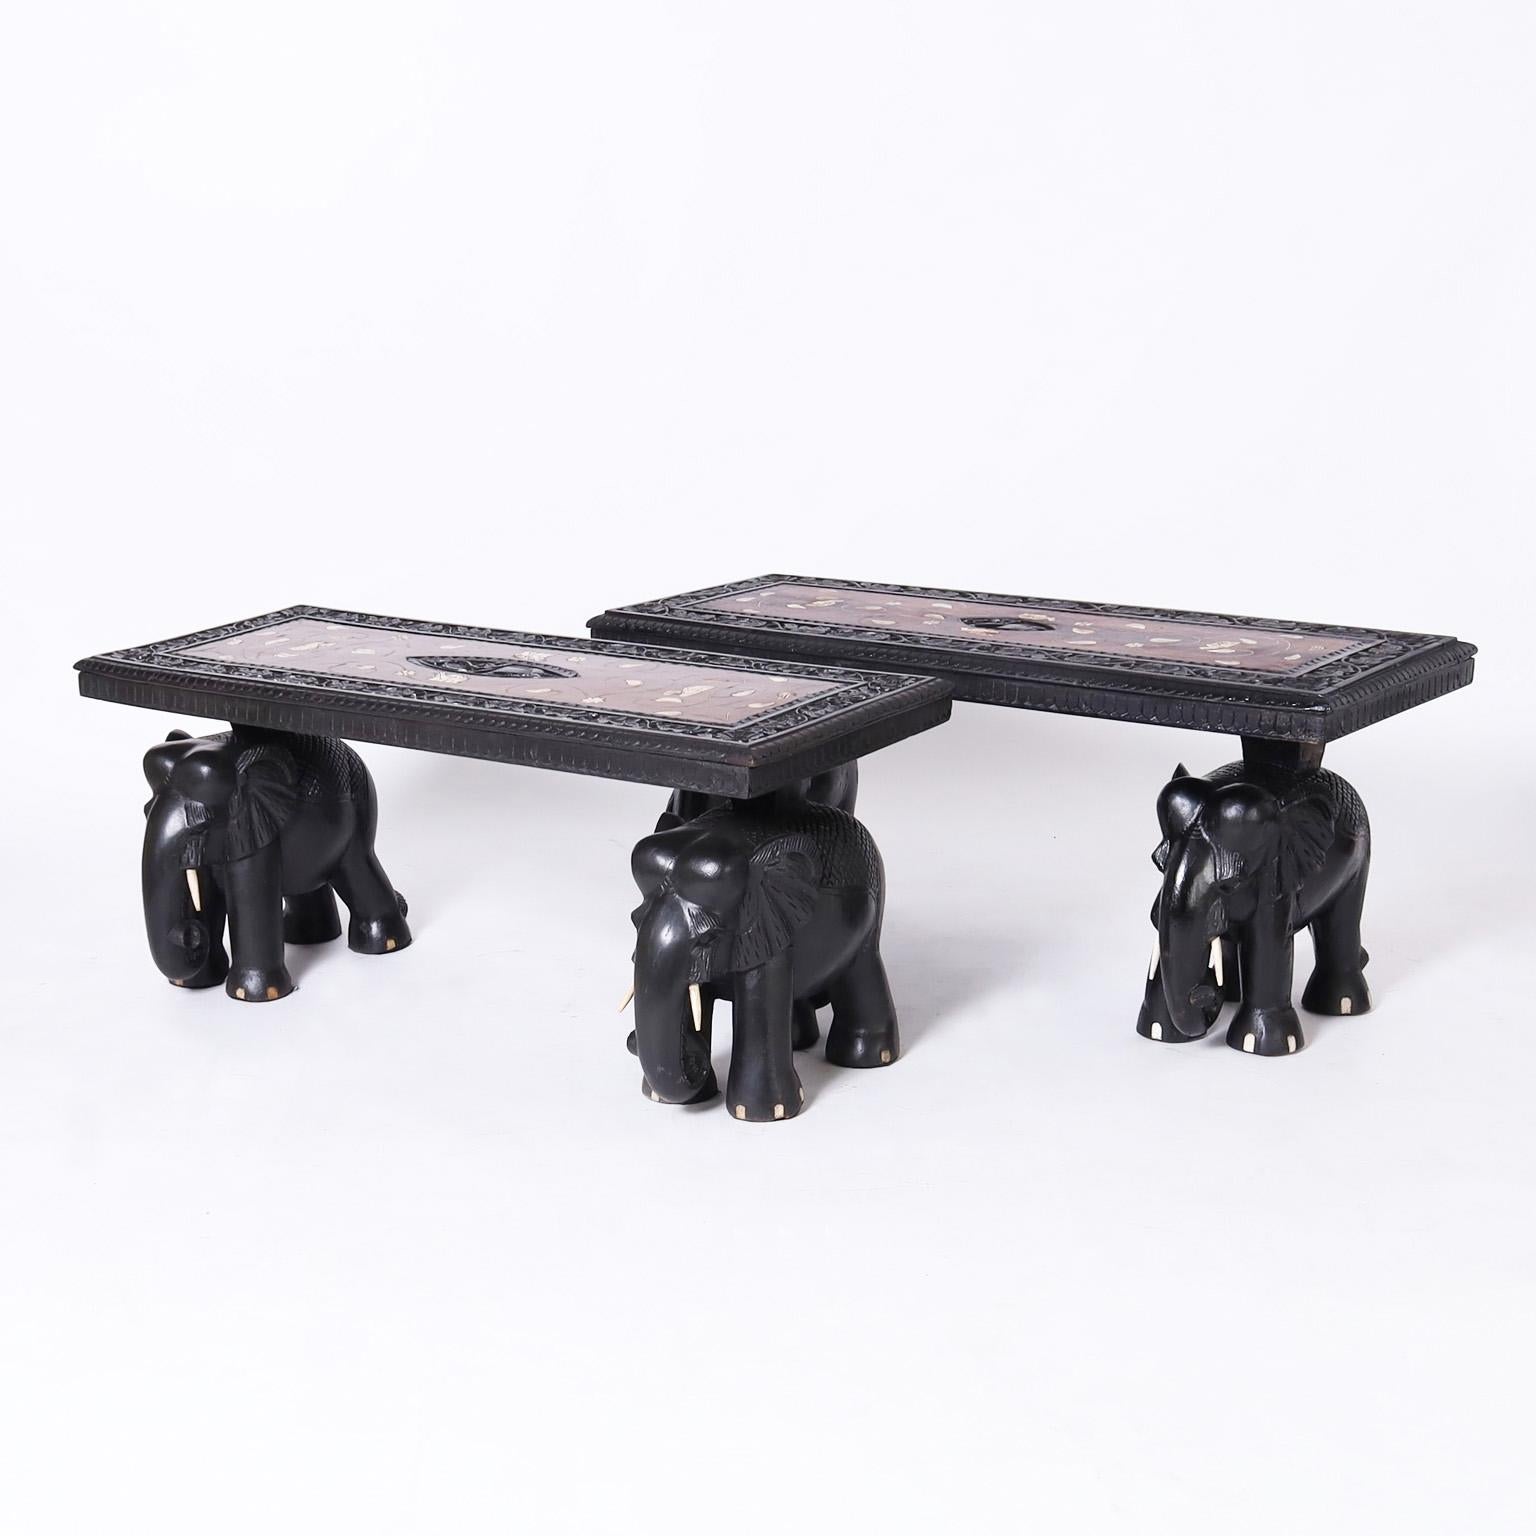 Rare  Paire remarquable de tables ou bancs anglo-indiens en acajou, avec des plateaux sculptés d'éléphants entourés d'un champ d'os incrusté dans une bordure florale sculptée et ébénisée. Les bases des éléphants sculptés sont ébonisées avec des